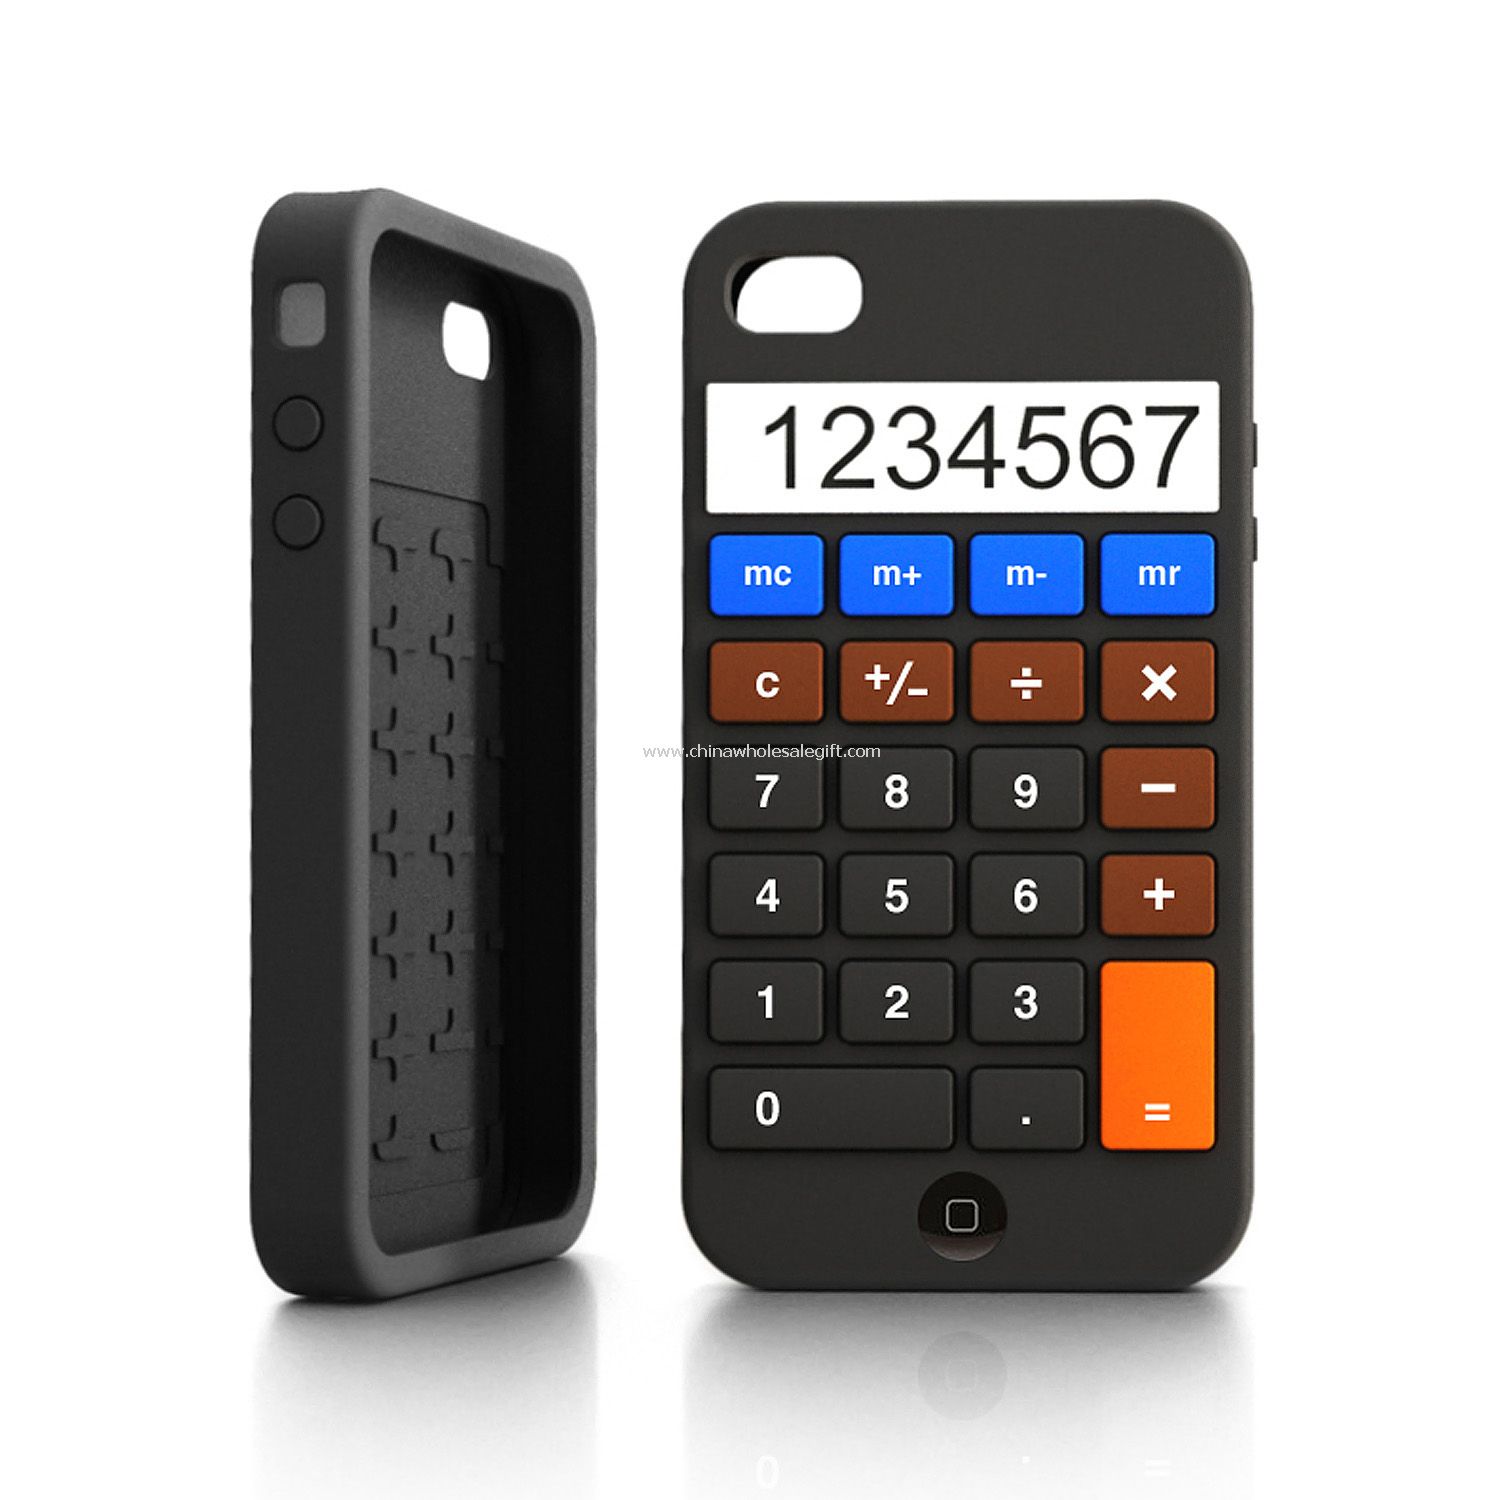 Kalkulator iPhone 4 przypadków